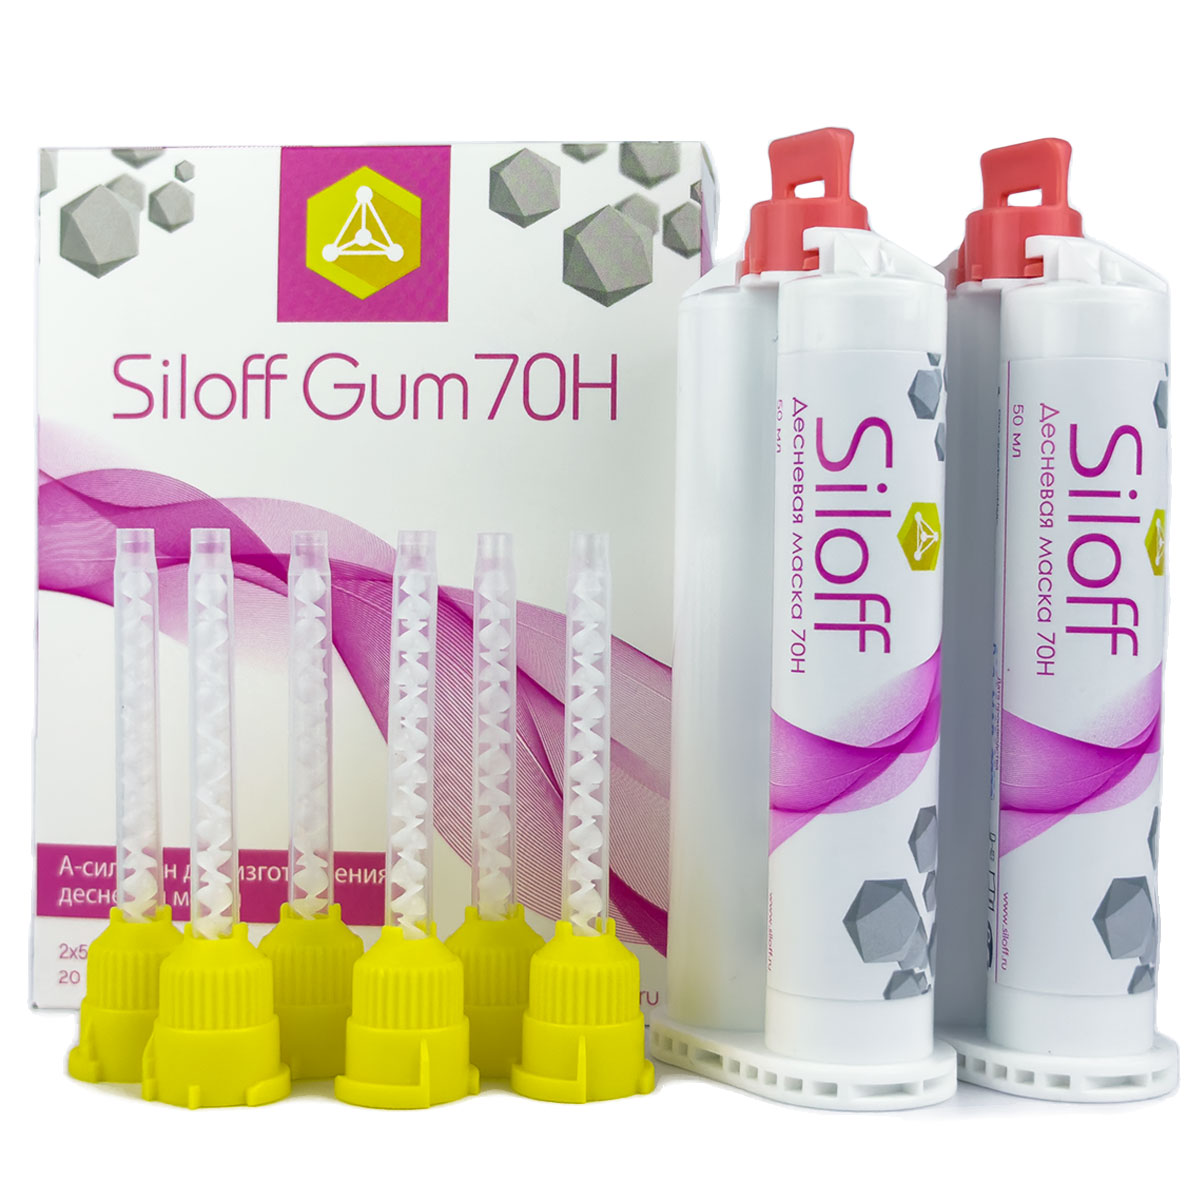 Siloff Gum 70Н Десневая маска (жёсткая)